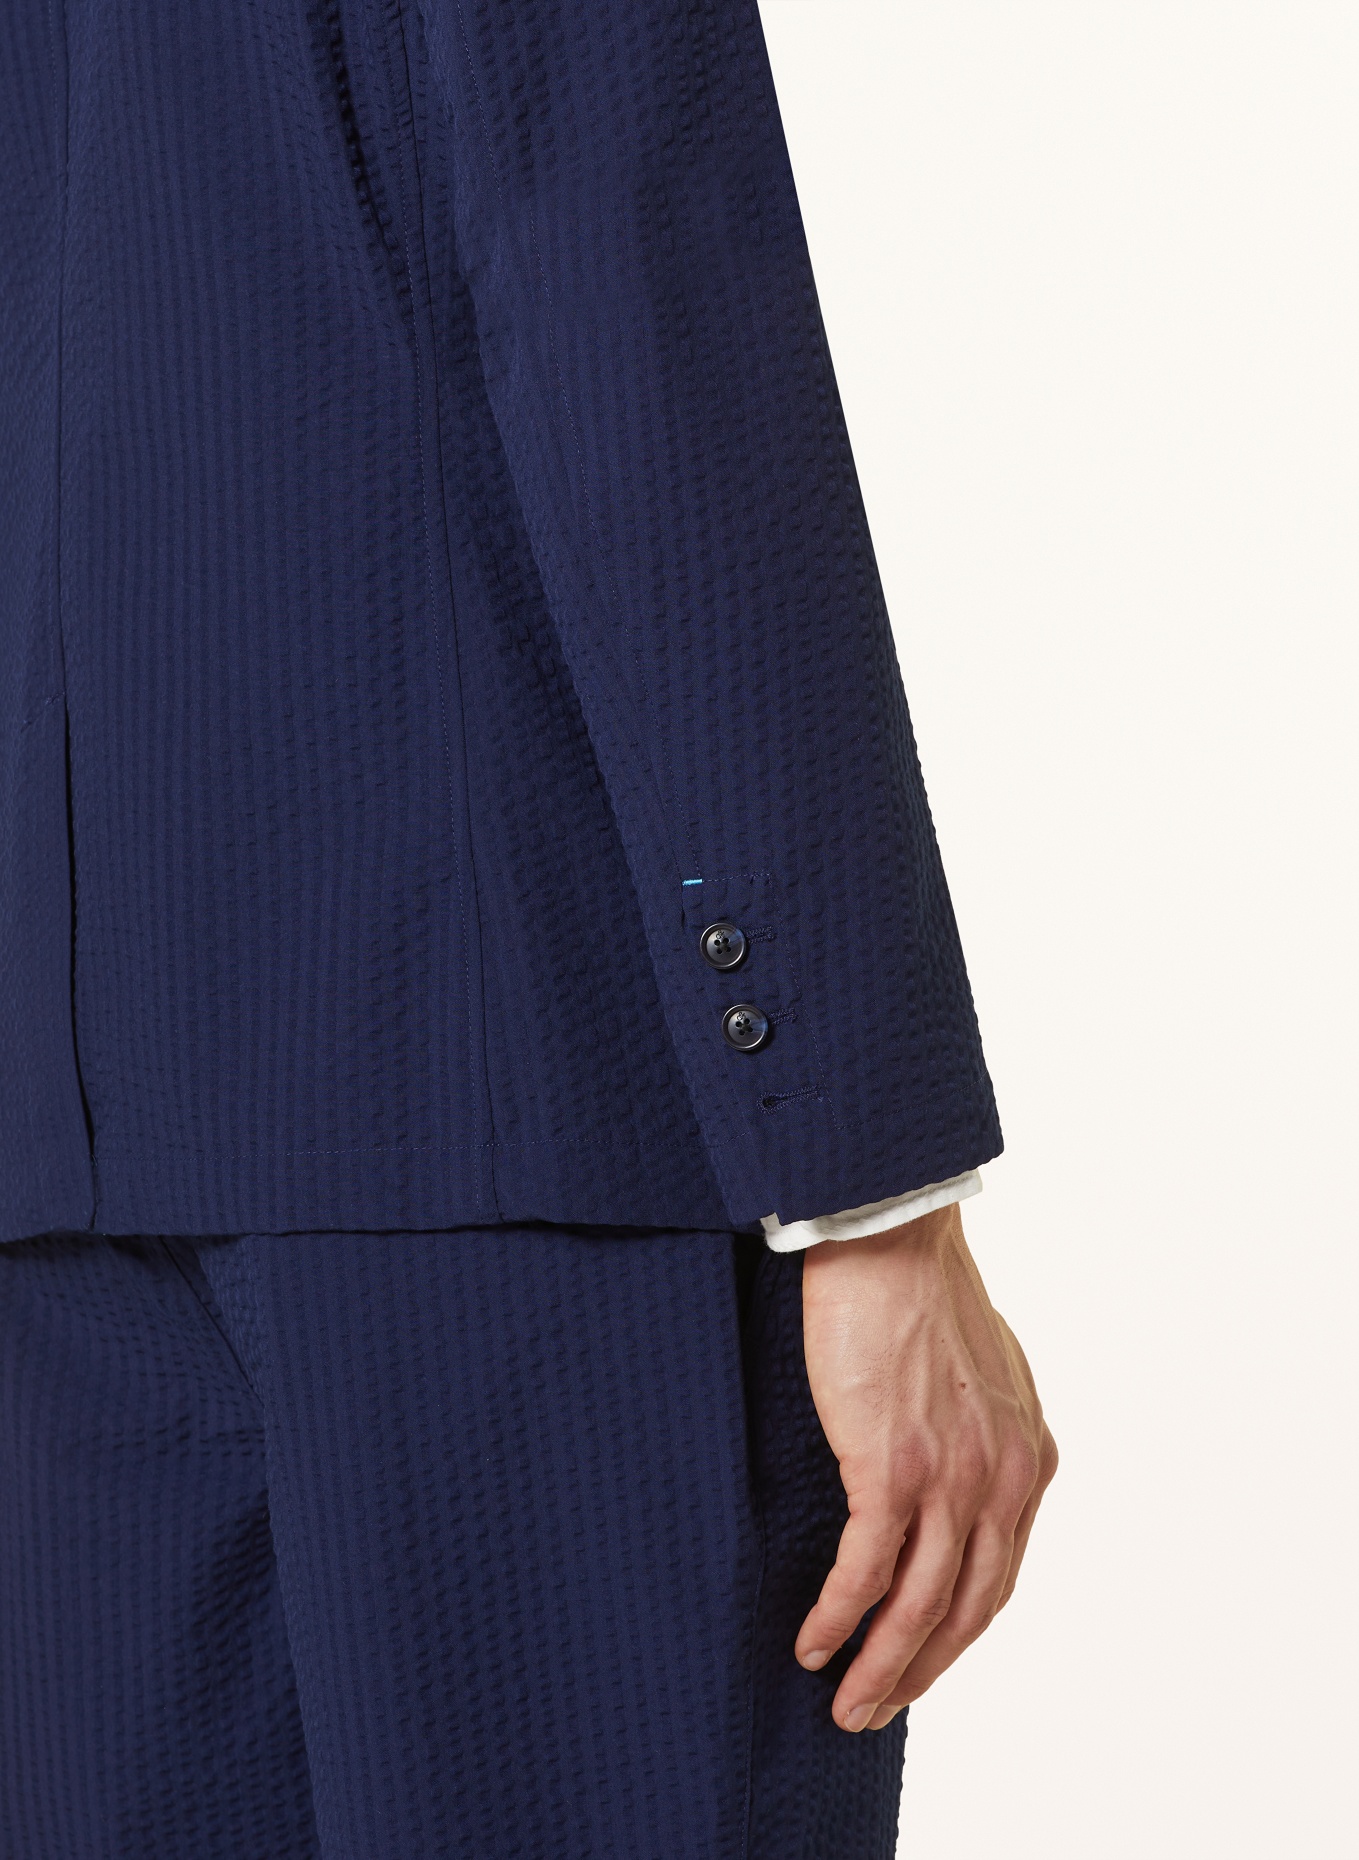 SCOTCH & SODA Suit jacket regular fit, Color: DARK BLUE (Image 6)